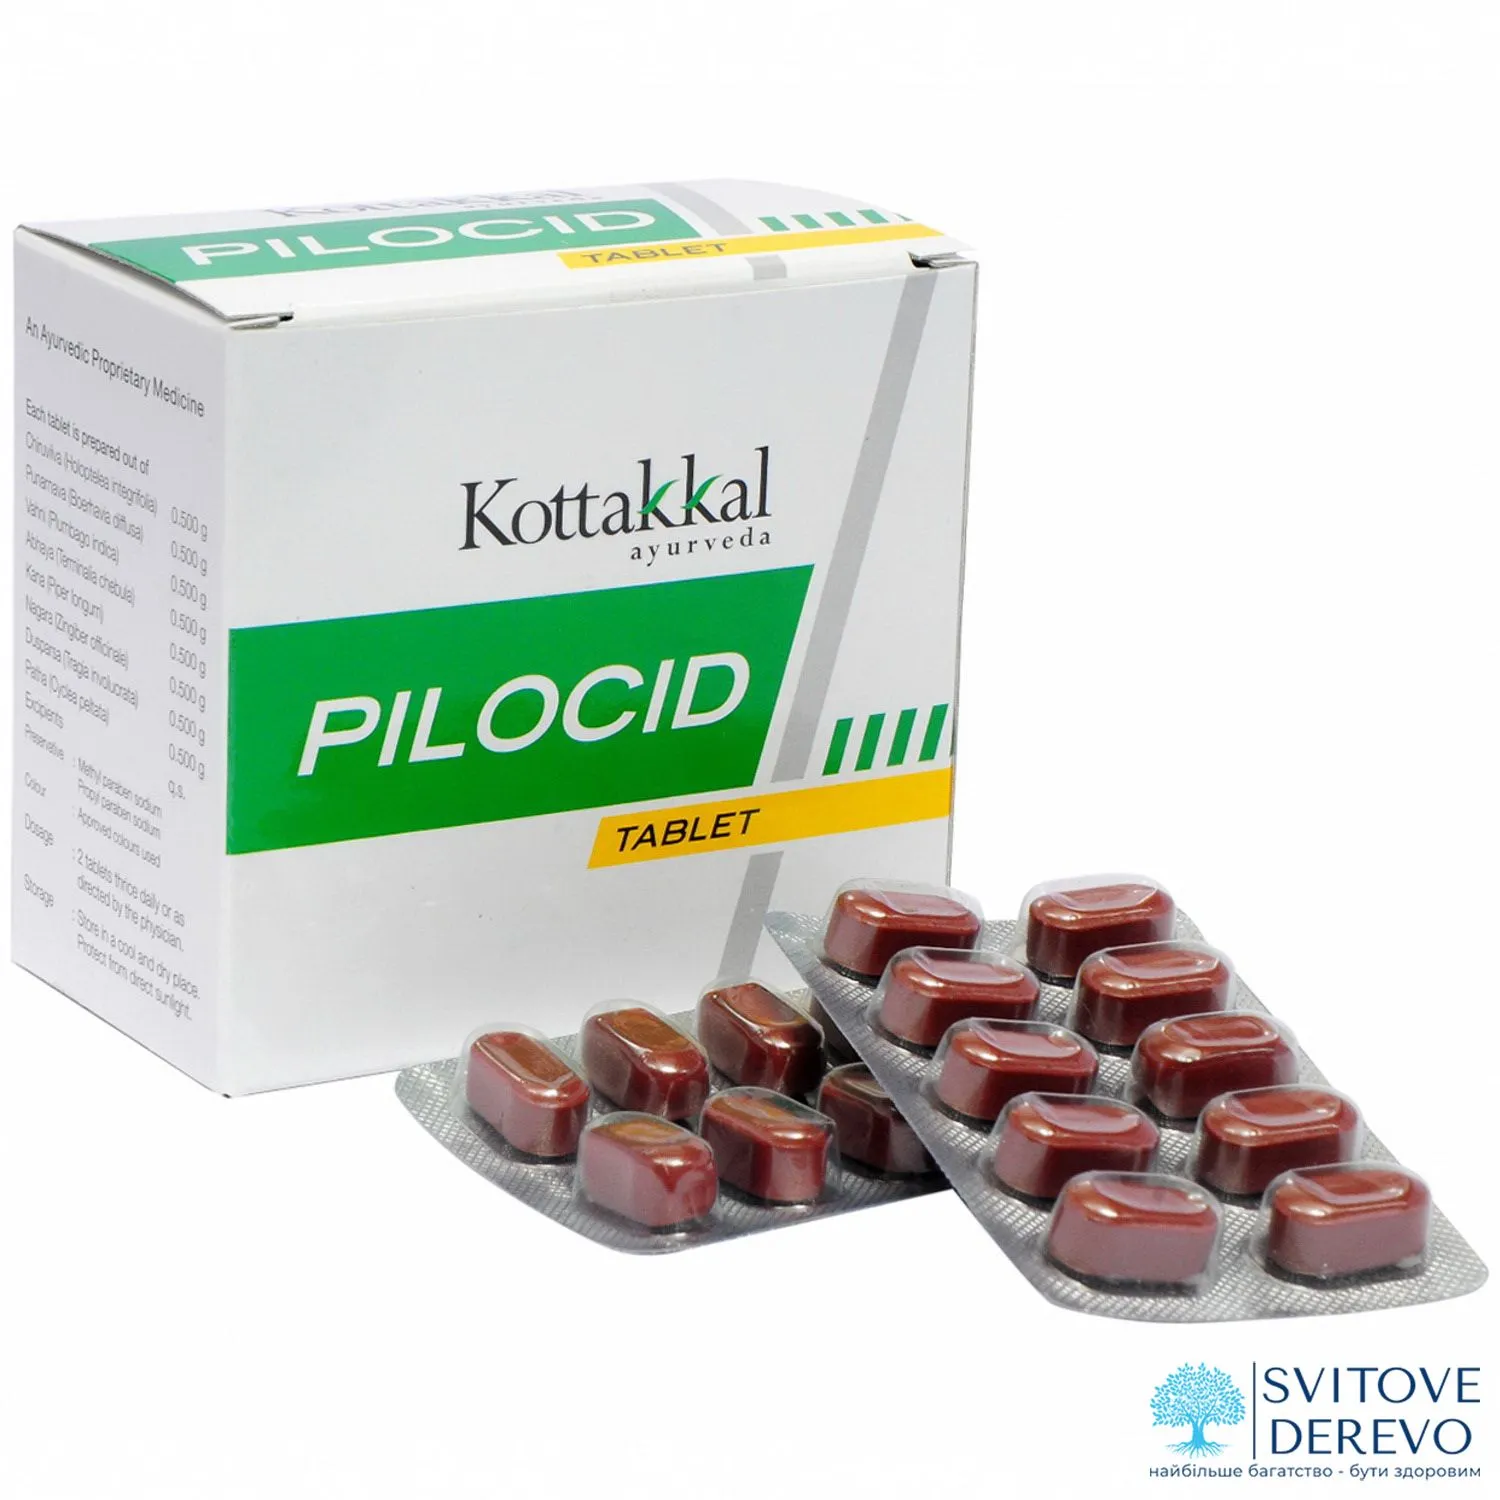 ≡ Пилосид (Pilocid Kottakkal) 100 таблеток купить в Киеве, Украине